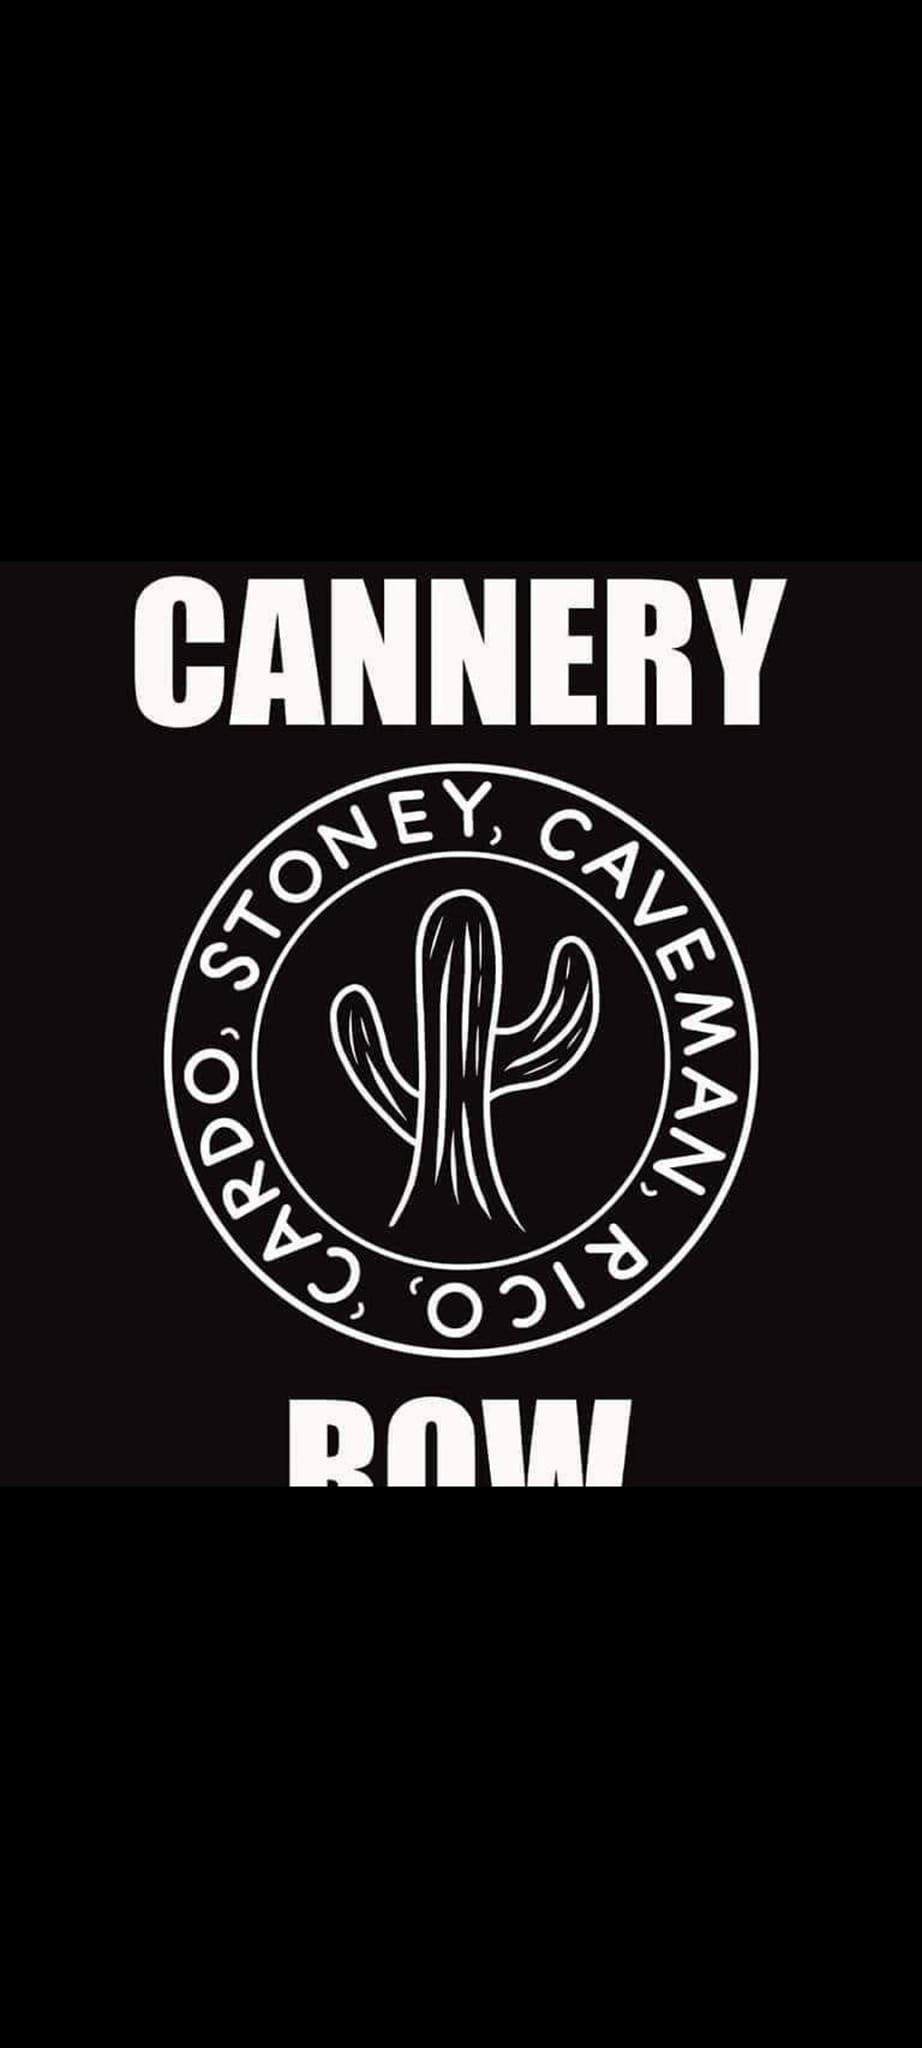 Cannery Row @ The Blackbull